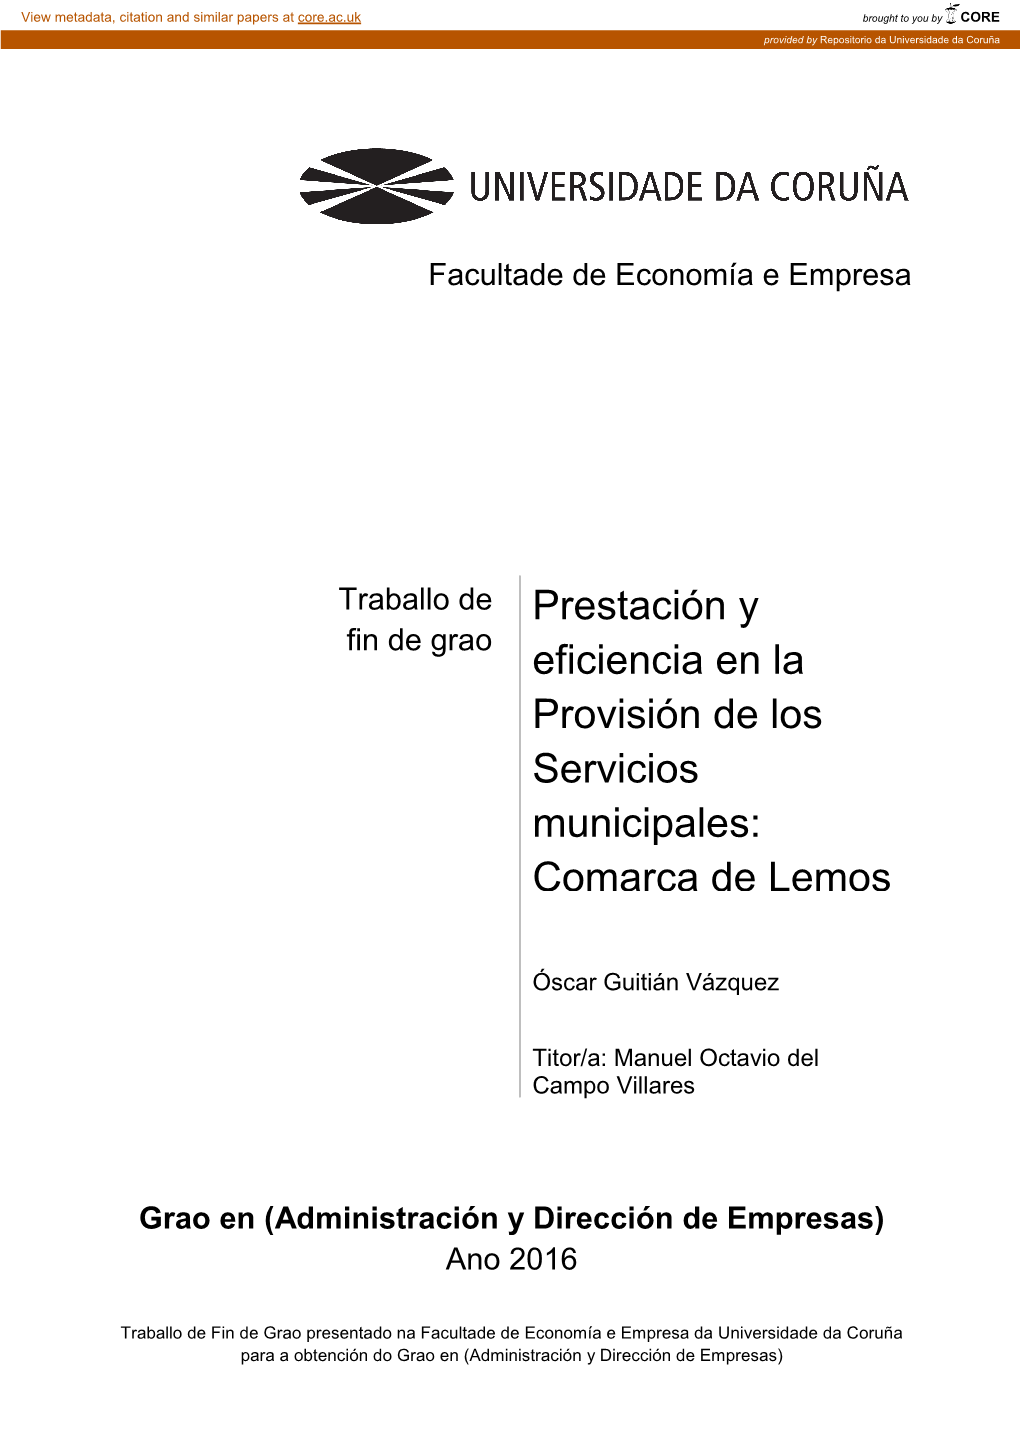 Prestación Y Eficiencia En La Provisión De Servicios Municipales: Comarca De Lemos